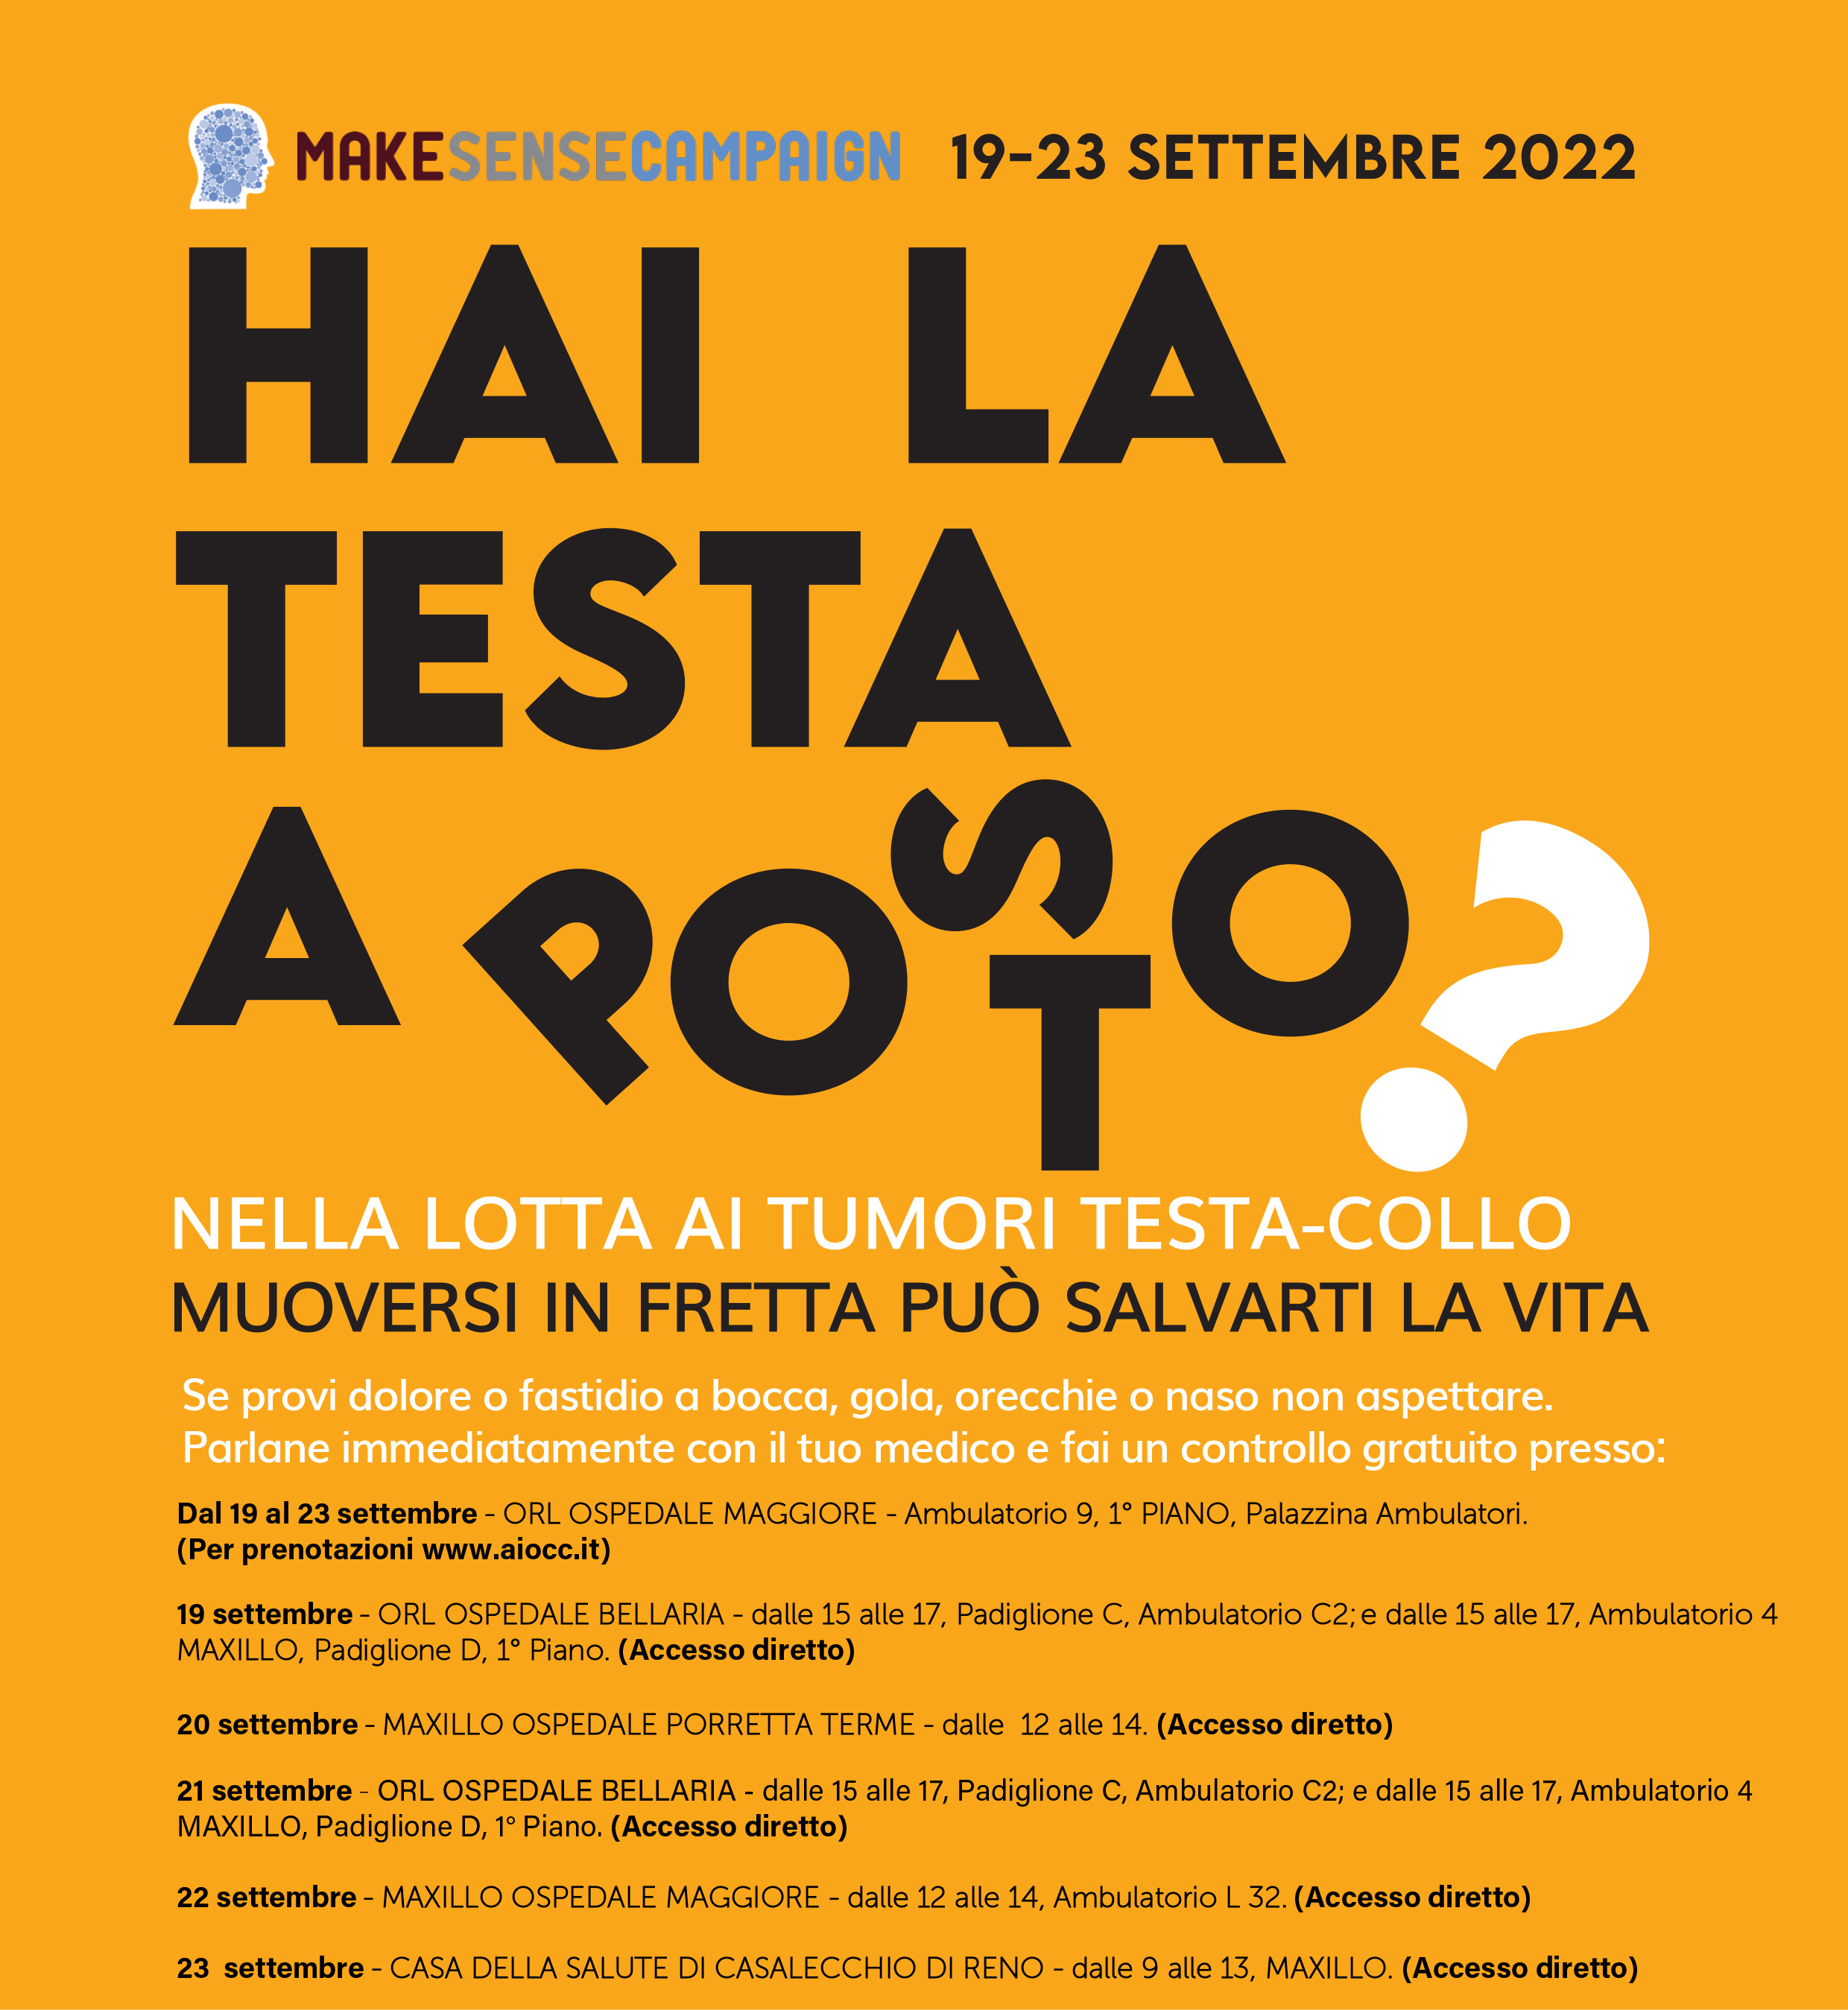 Anche a Bologna, dal 19 al 23 settembre la X edizione della Make Sense Campaign, la Campagna europea di sensibilizzazione alla diagnosi precoce dei tumori testa-collo